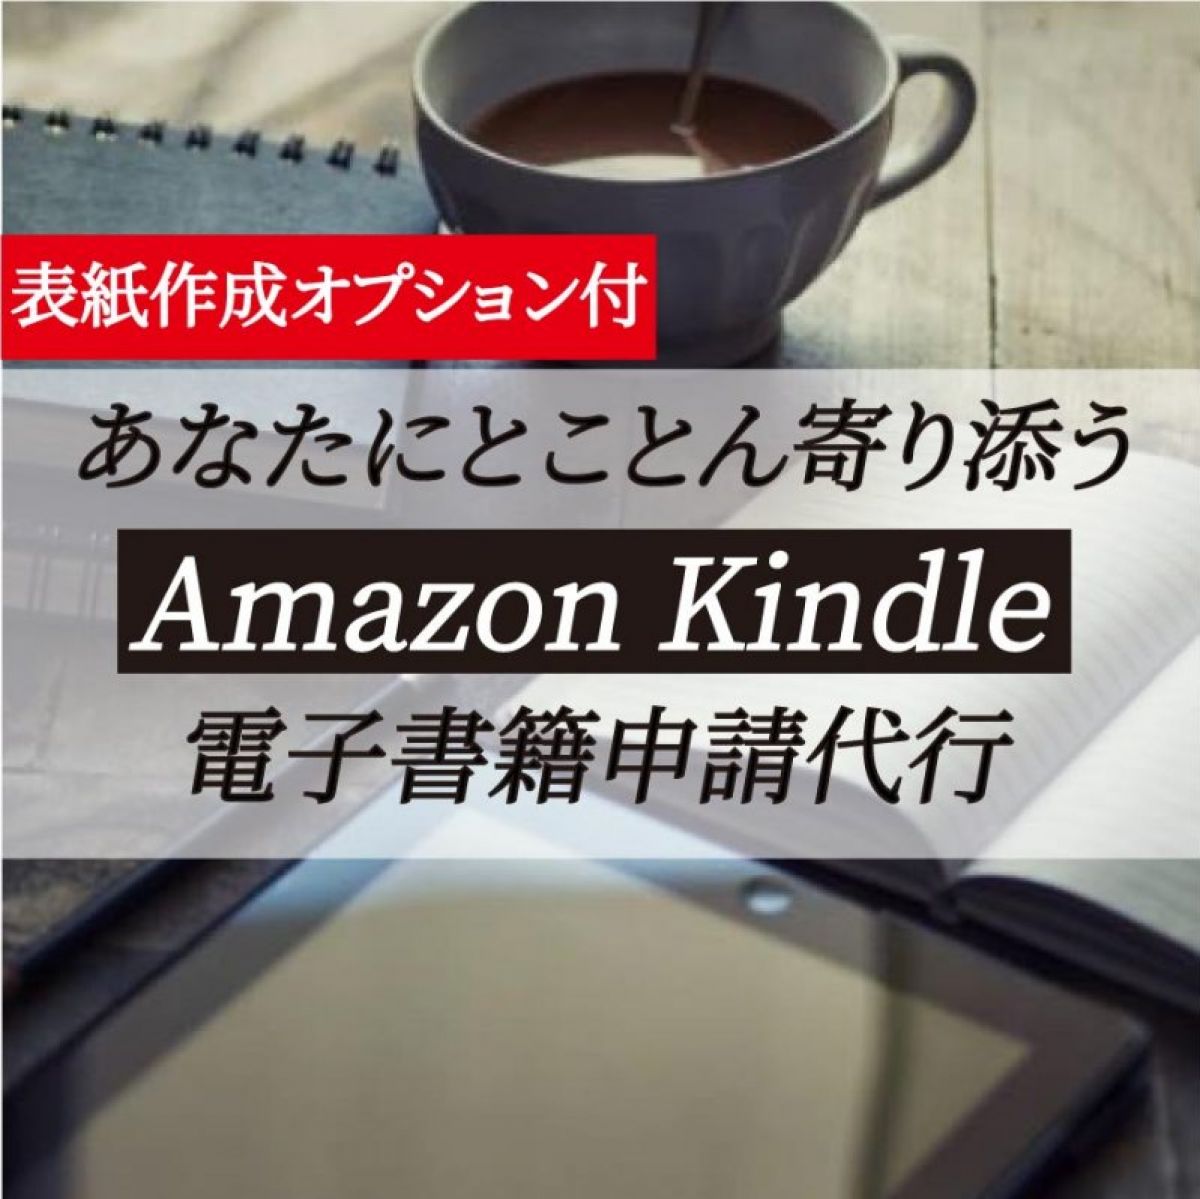 あなたにとことん寄り添う Amazon Kindle 電子書籍申請代行（データ化、申請、アップ、表紙作成オプションあり）